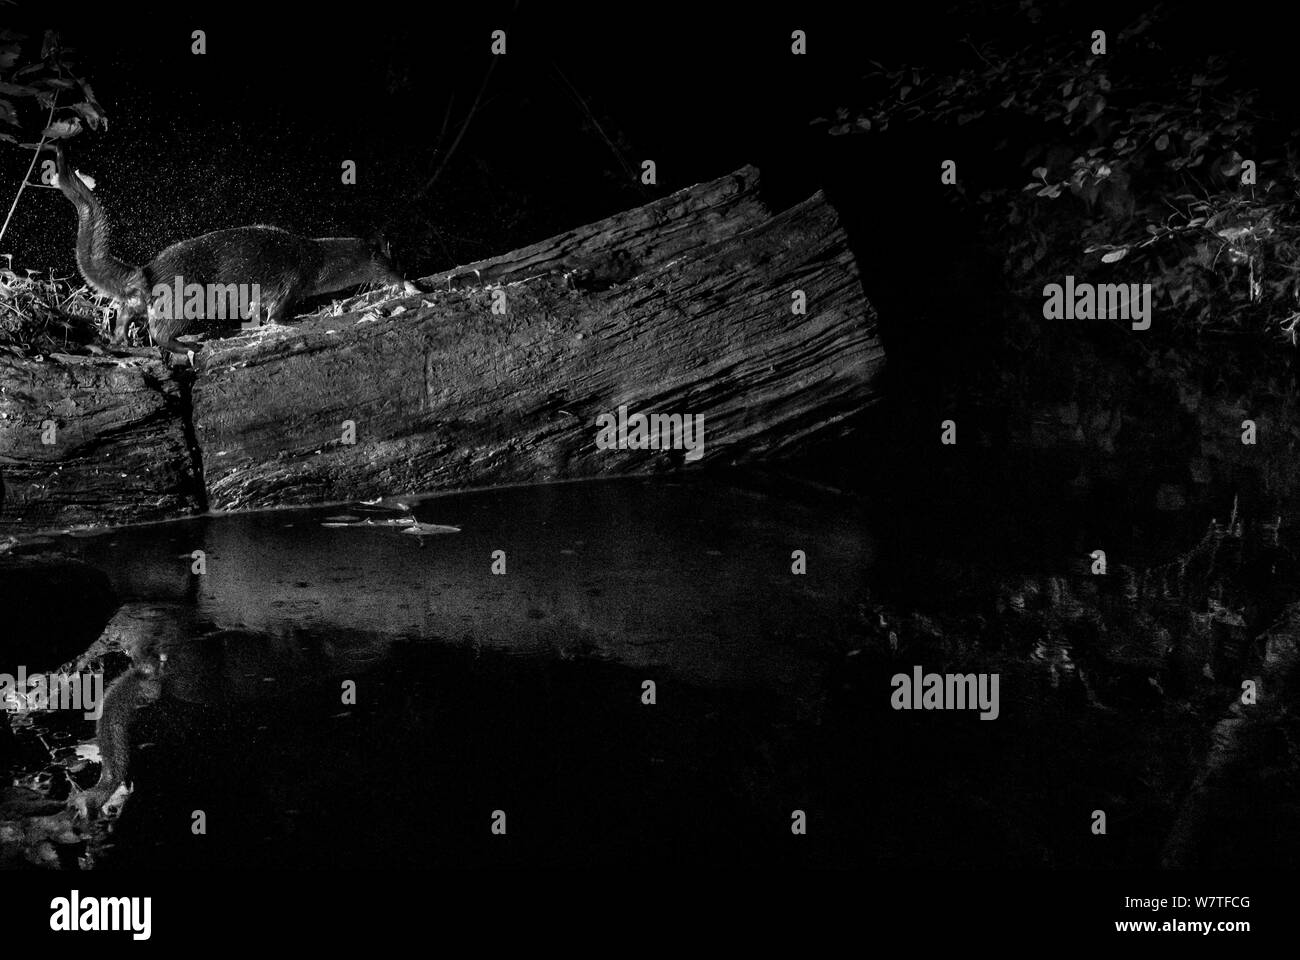 La loutre (Lutra lutra) secouer l'eau sur log, prises de nuit avec l'appareil photo à distance infrarouge piège, Mayenne, Pays de Loire, France. Banque D'Images